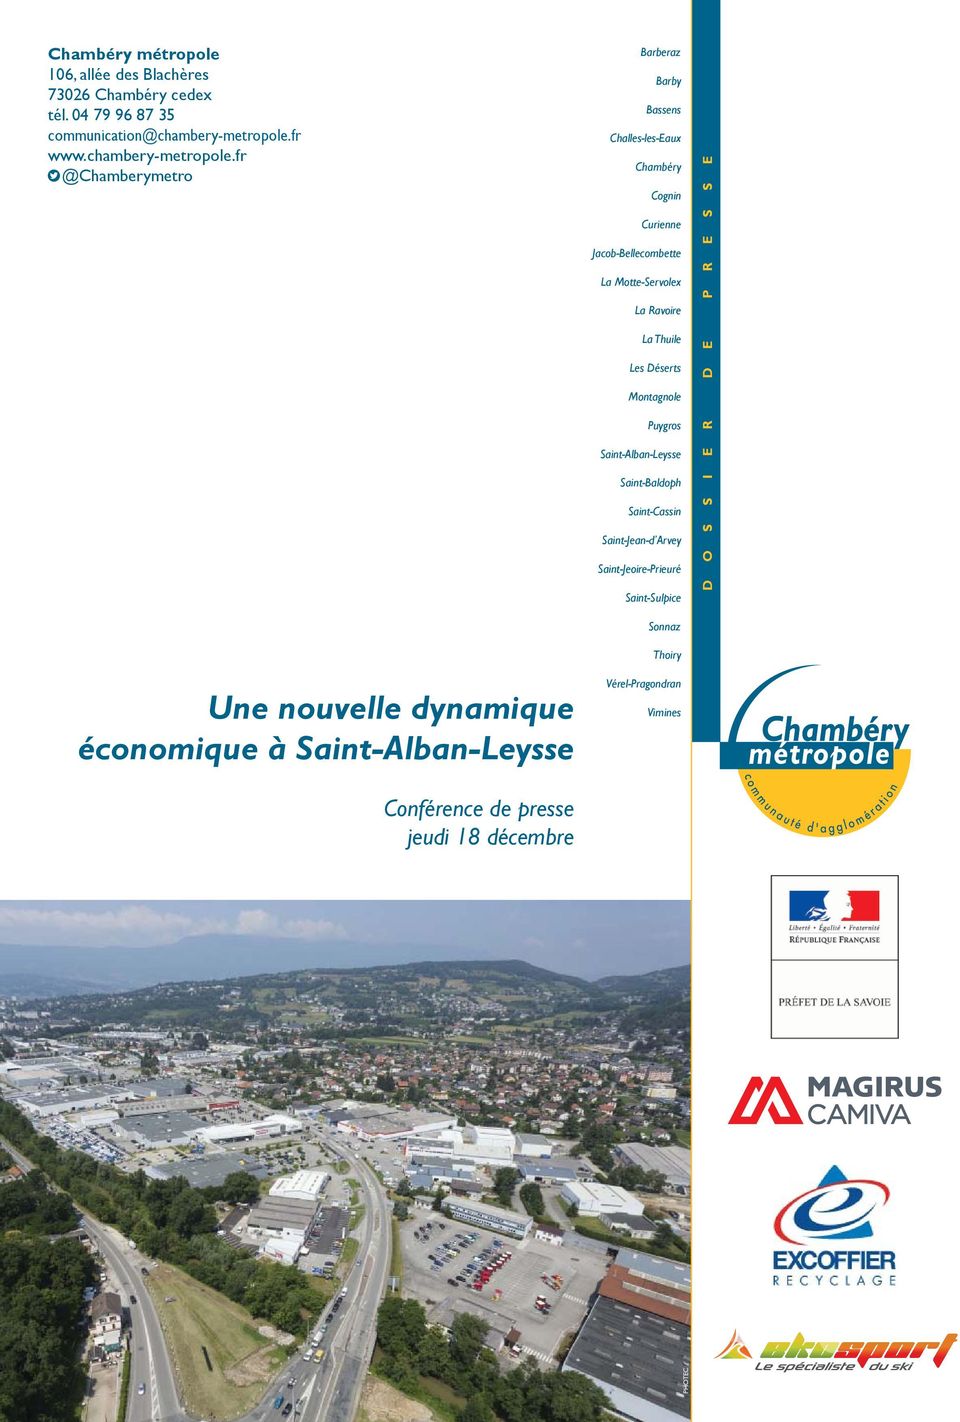 fr @Chamberymetro Une nouvelle dynamique économique à Saint-Alban-Leysse Barberaz Barby Bassens Challes-les-Eaux Chambéry Cognin Curienne